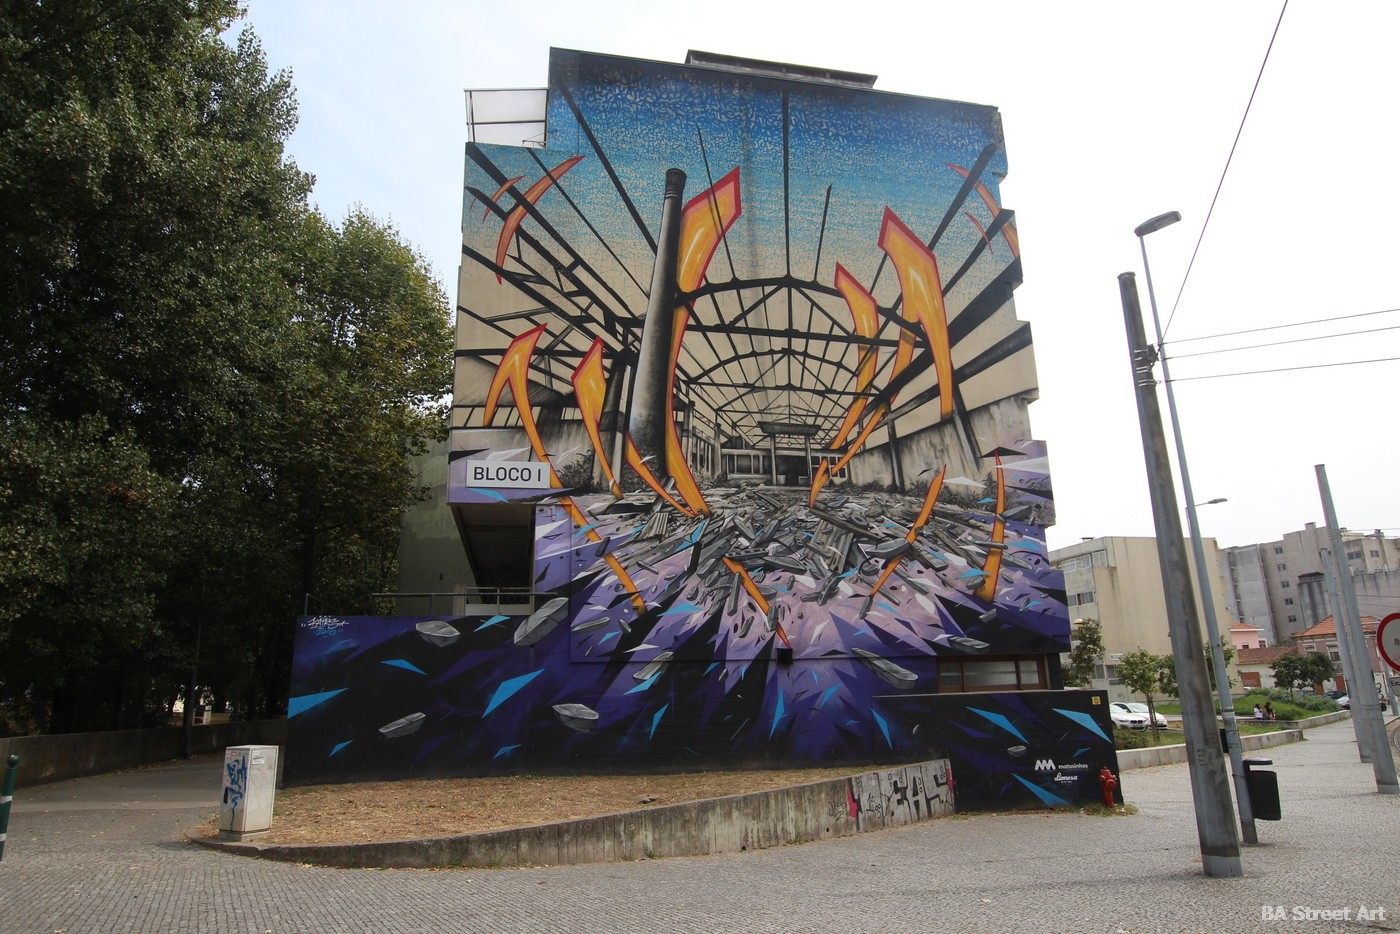  graffiti tour porto portugal katre matosinhos perspective architecture arte urbano